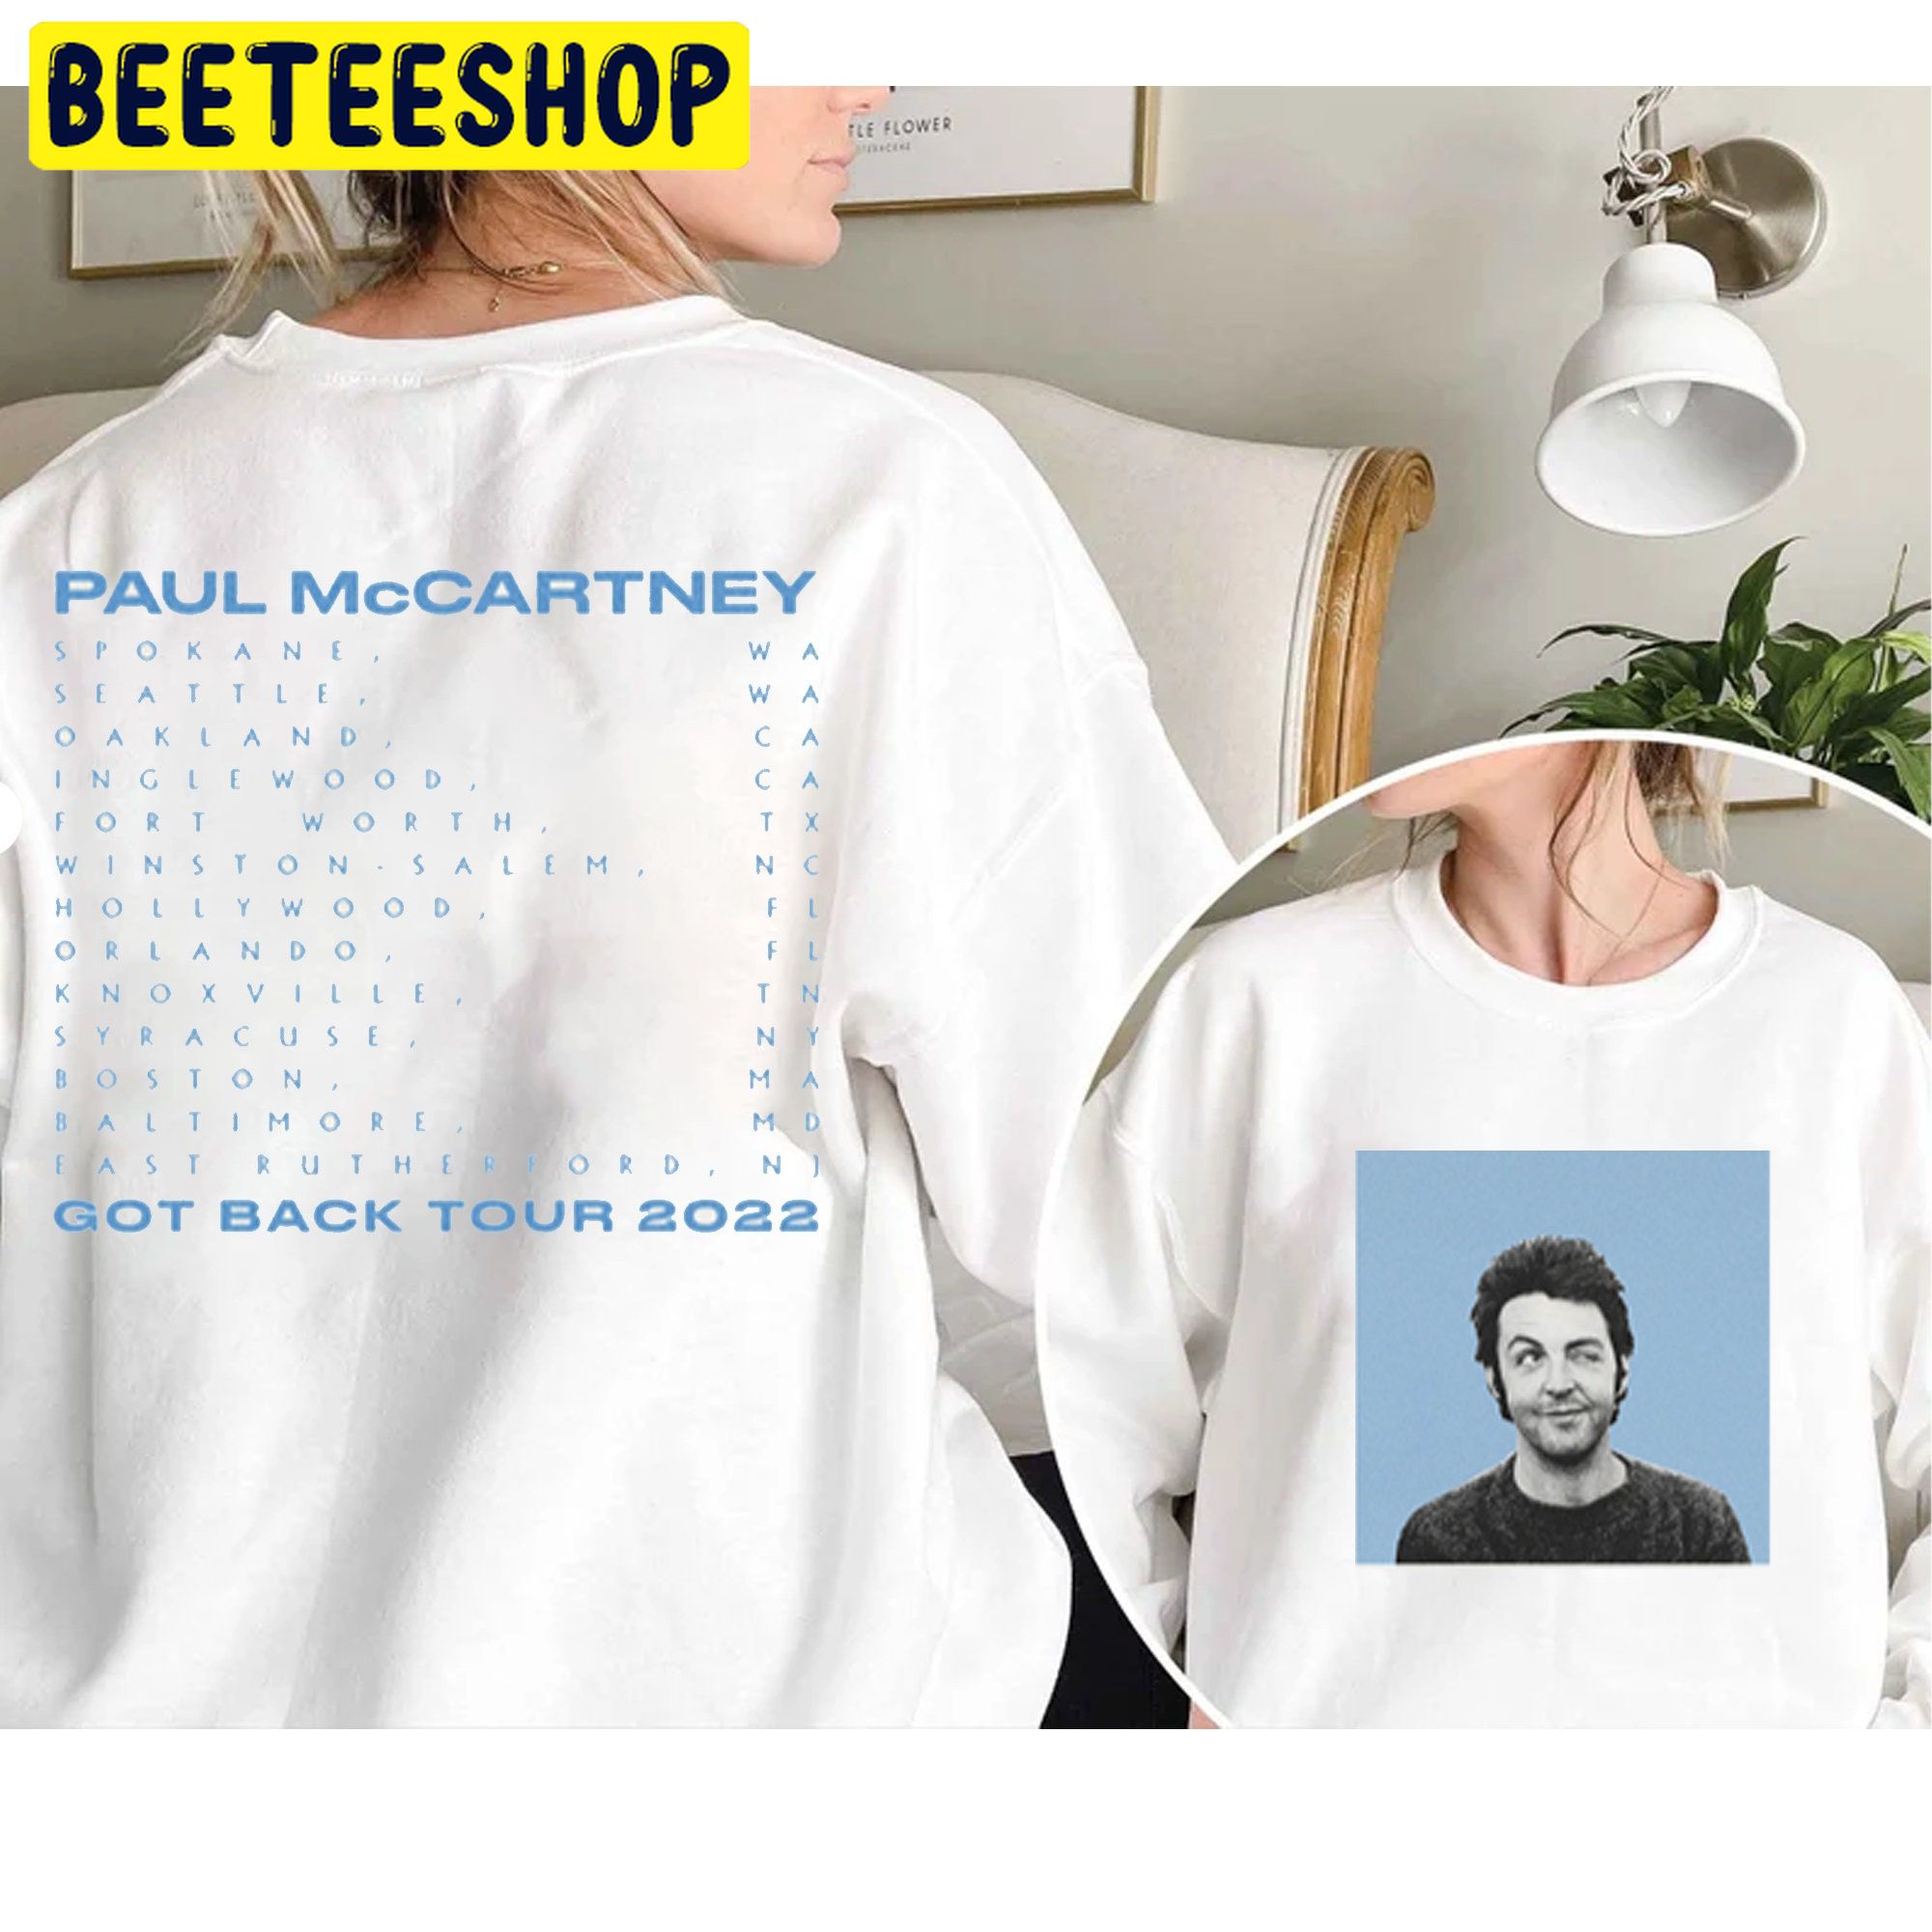 Paul Mccartney 2022 Tour Got Back Graphic Vintage Double Side Unisex Shirt